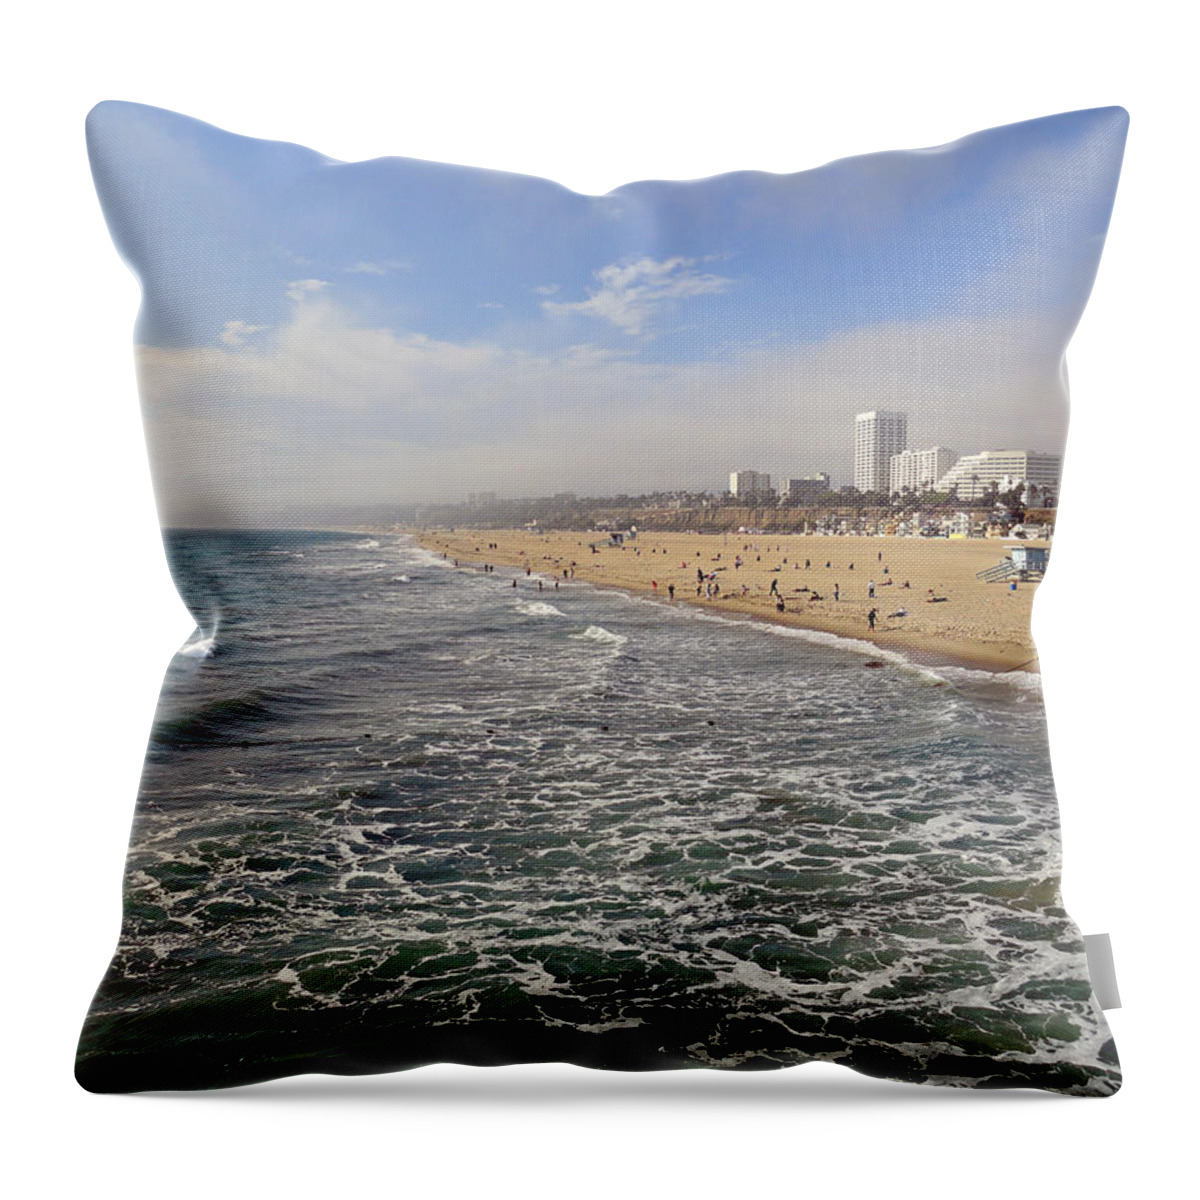 Santa Monica Throw Pillow featuring the photograph Santa Monica Beach by Robert Meyers-Lussier